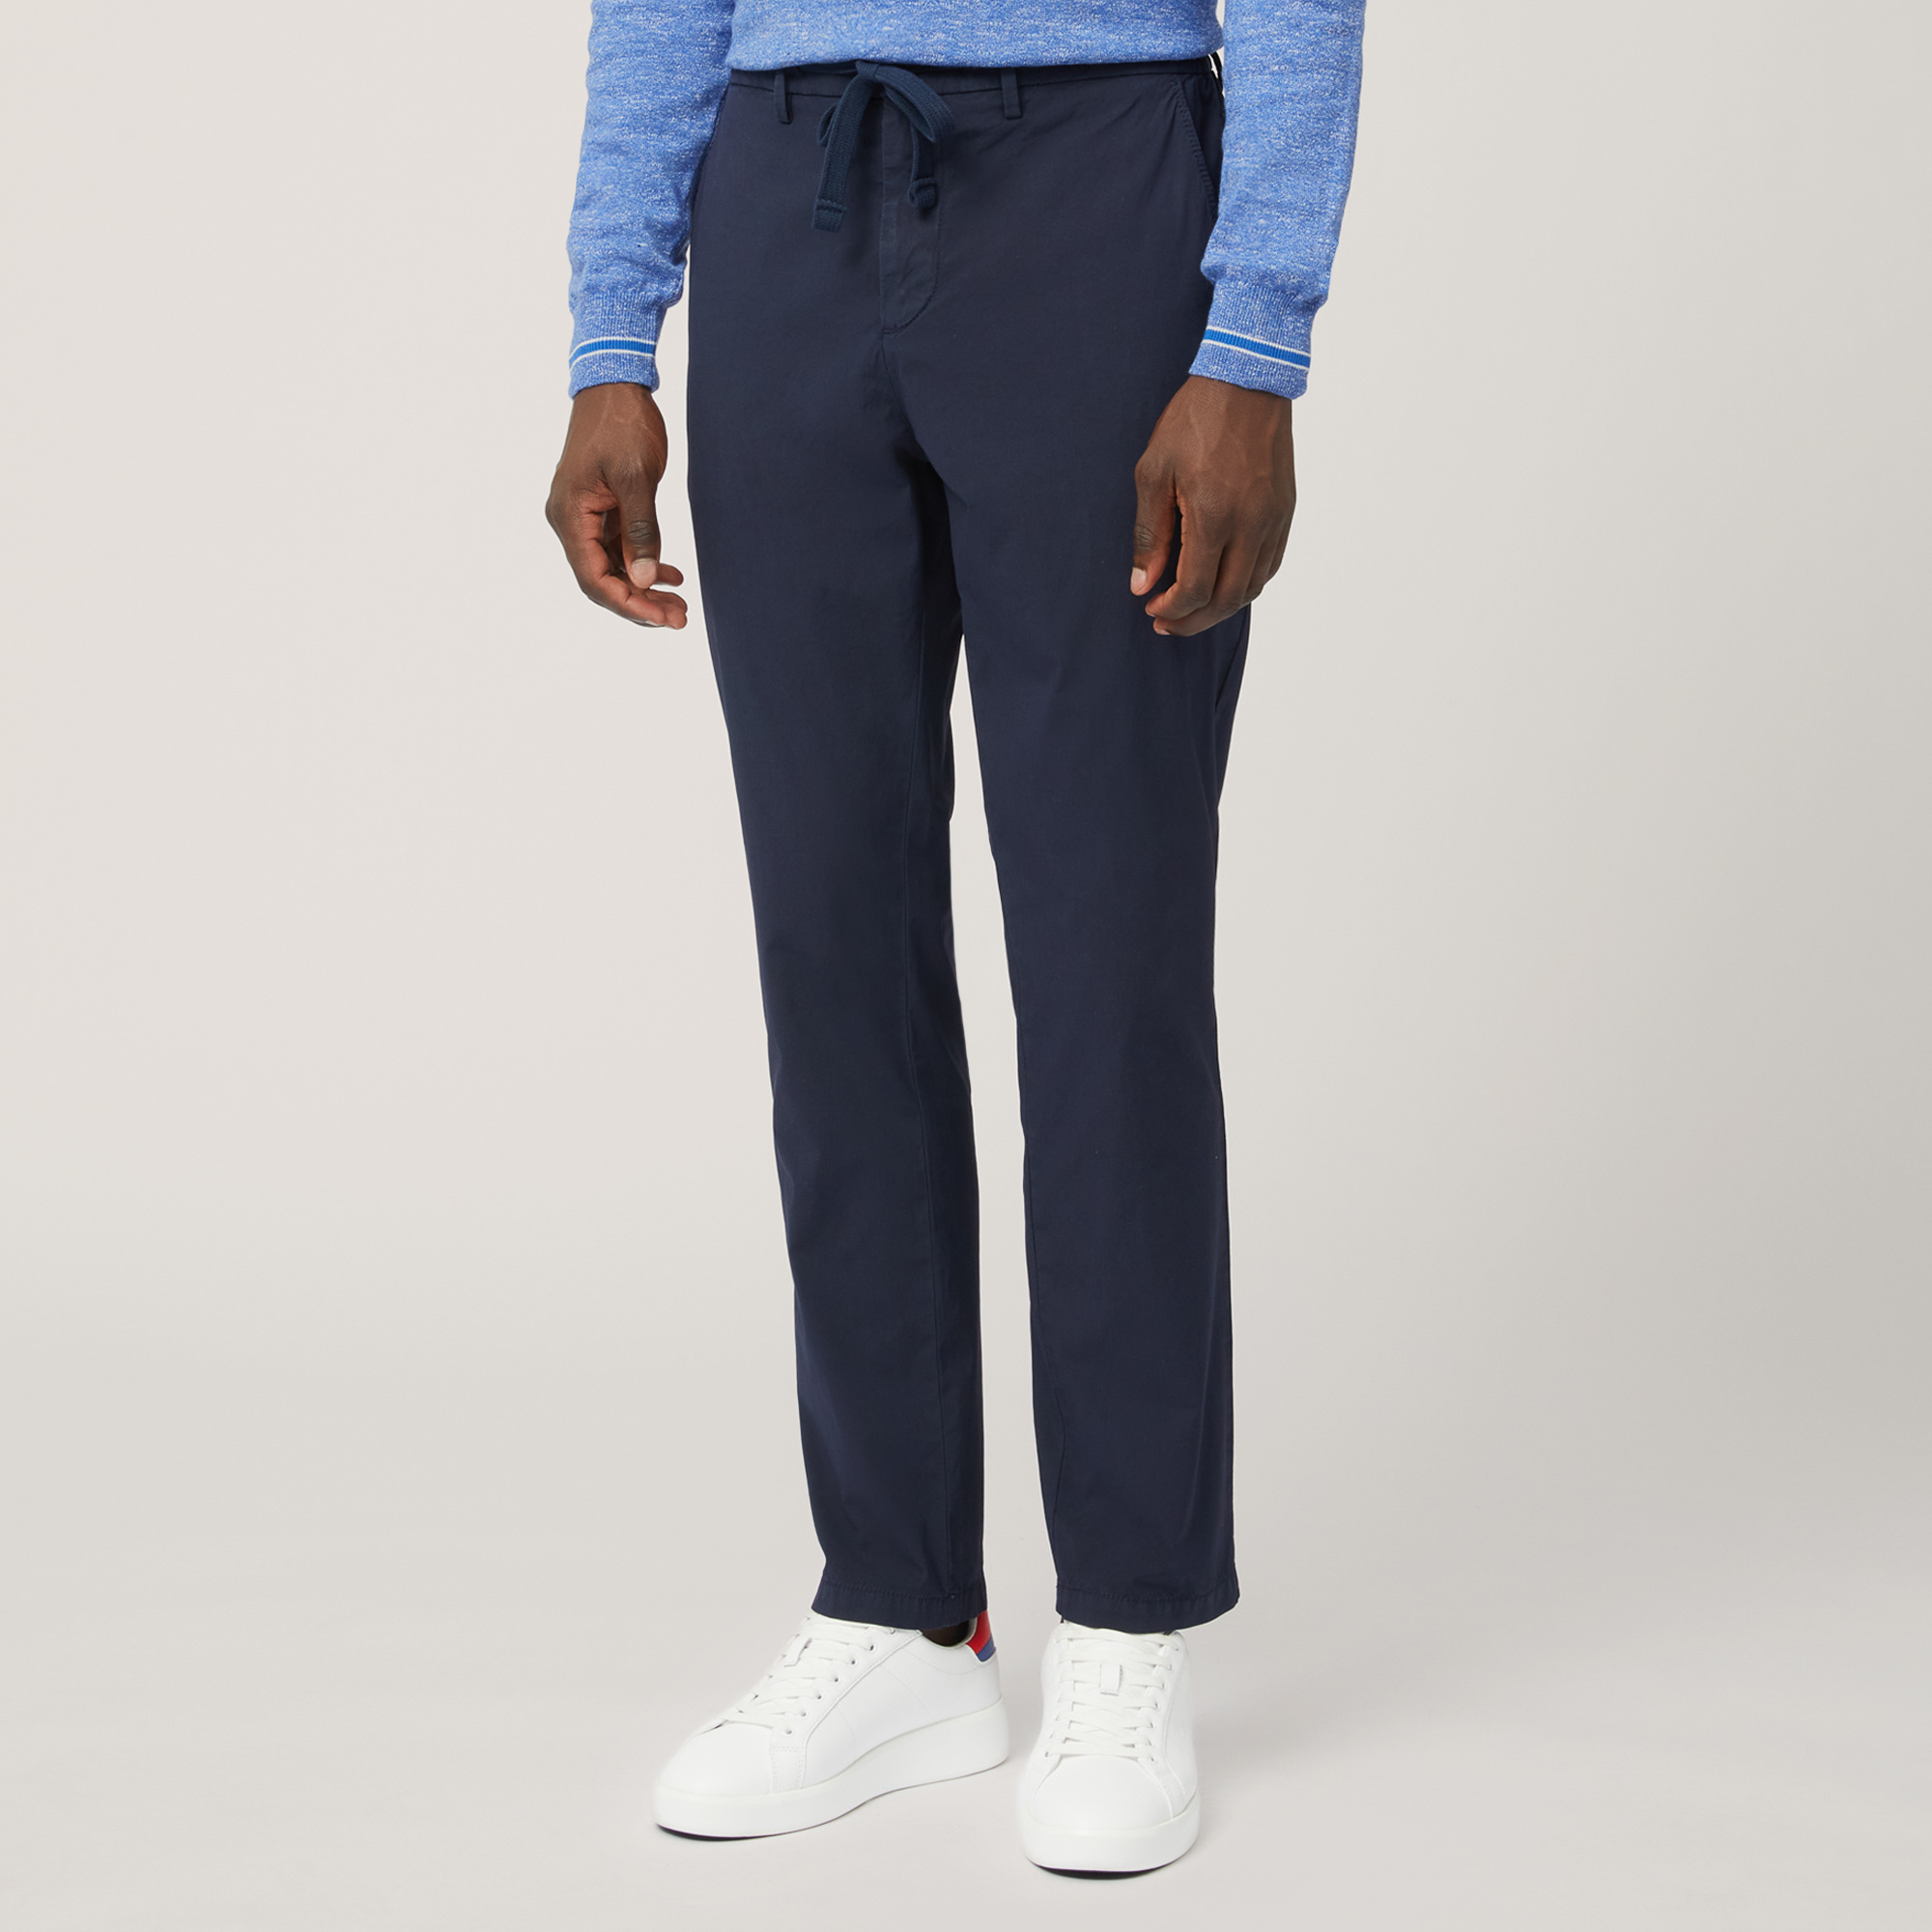 Pantalón estilo jogger de algodón, Azul, large